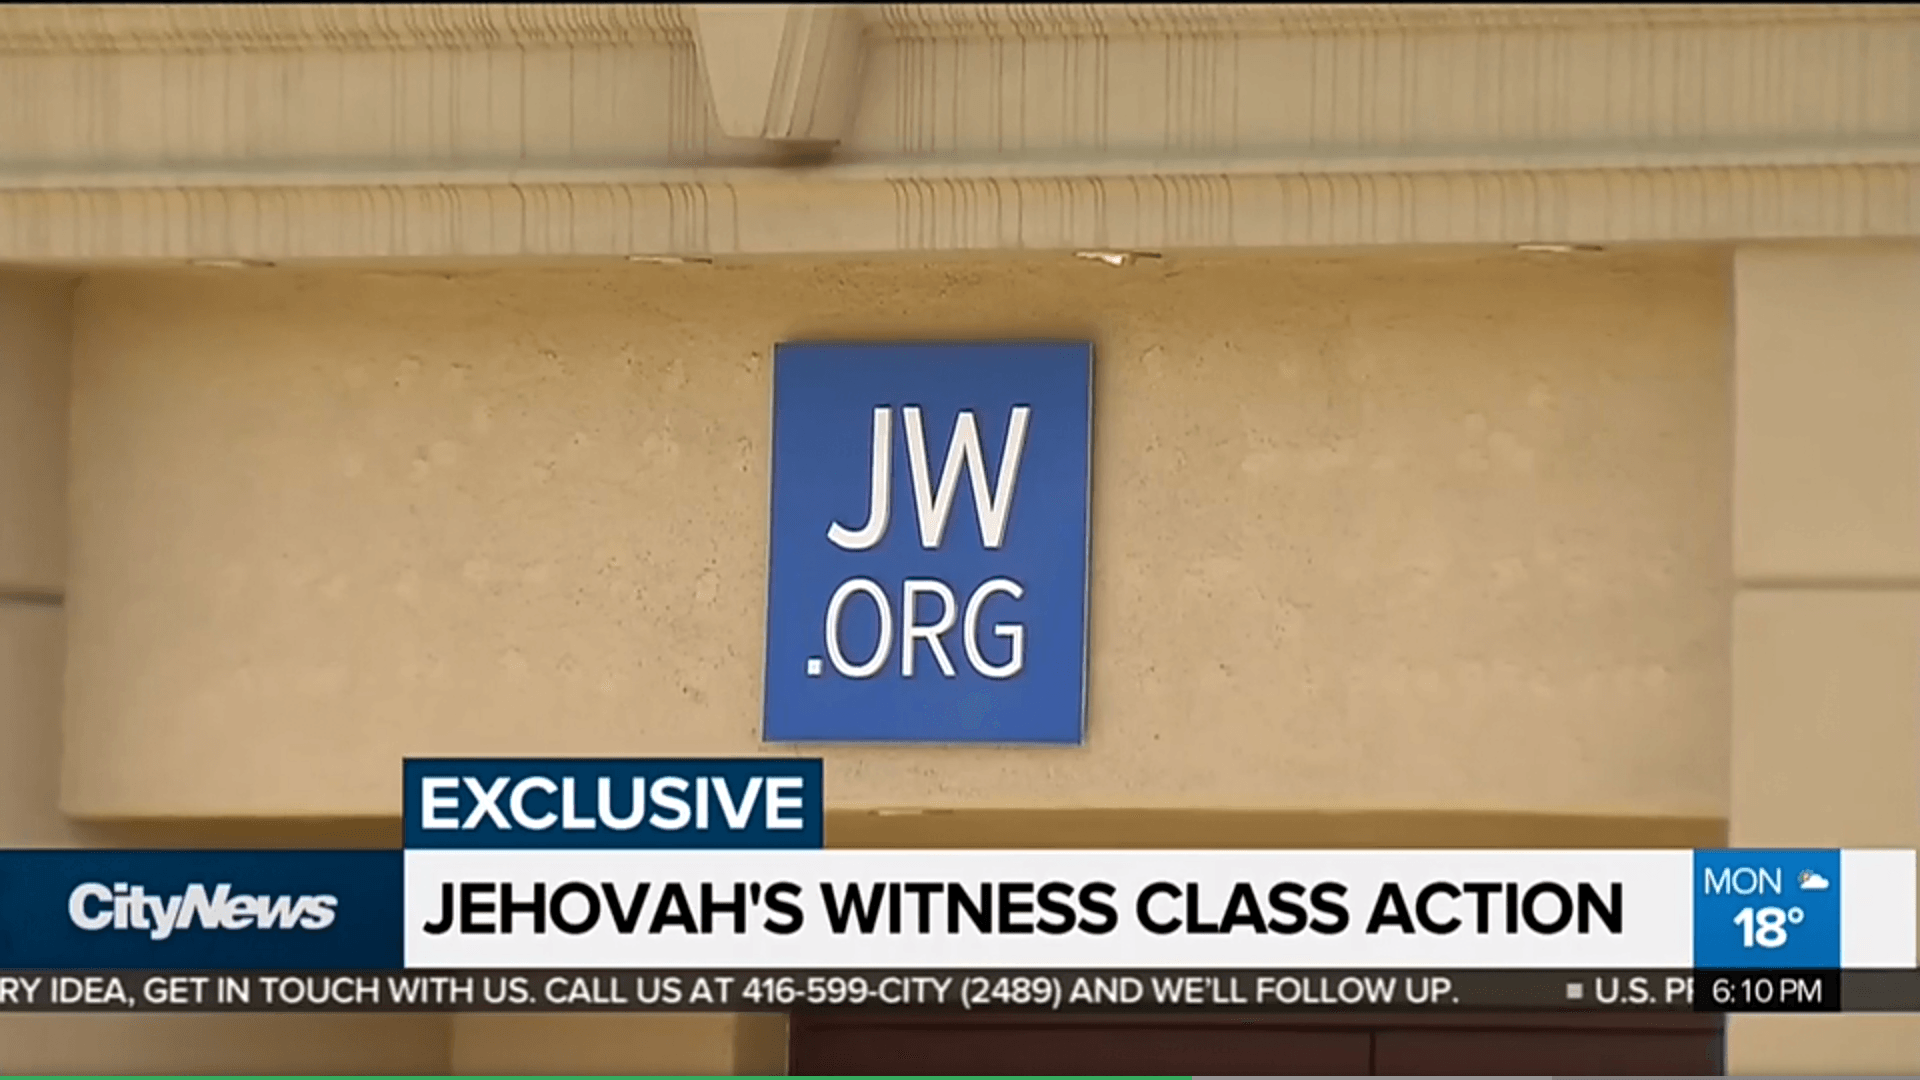 Jehovas Zeugen News Sammelklage 66 Millionen Kindesmissbrauch Pädophile Bethel Wahrheiten jetzt! Ein weiterer starker Hinweis, dass der WTG das Geld ausgeht